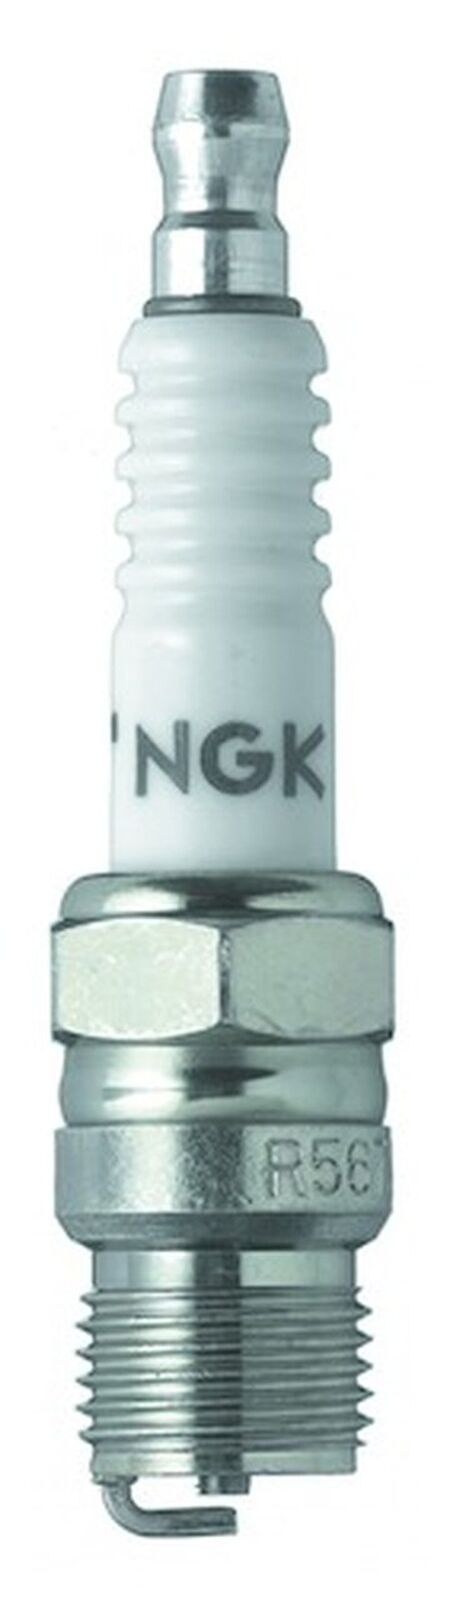 4x NGK Racing Spark Plug Stock 2817 Nickel Core Tip Standard 0.028in R5673-7